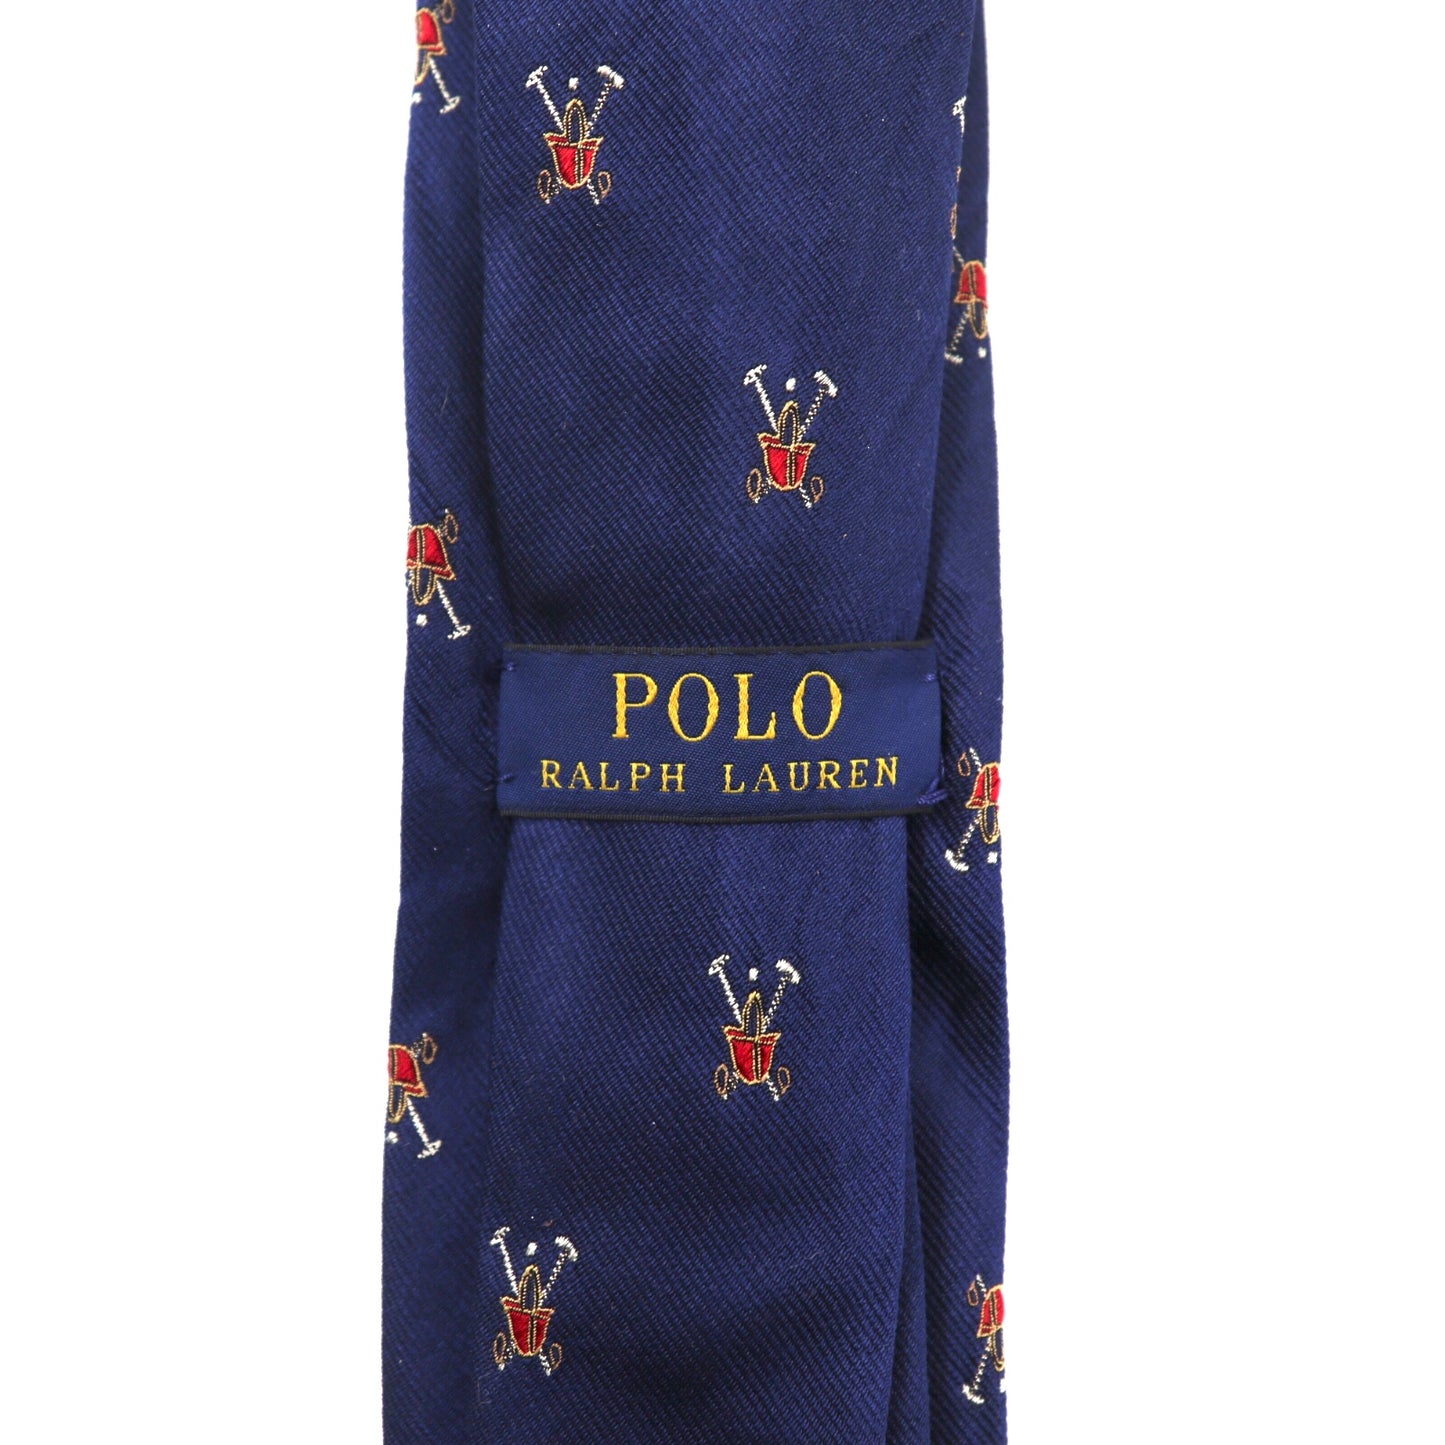 POLO RALPH LAUREN ネクタイ ネイビー シルク ロゴ イタリア製